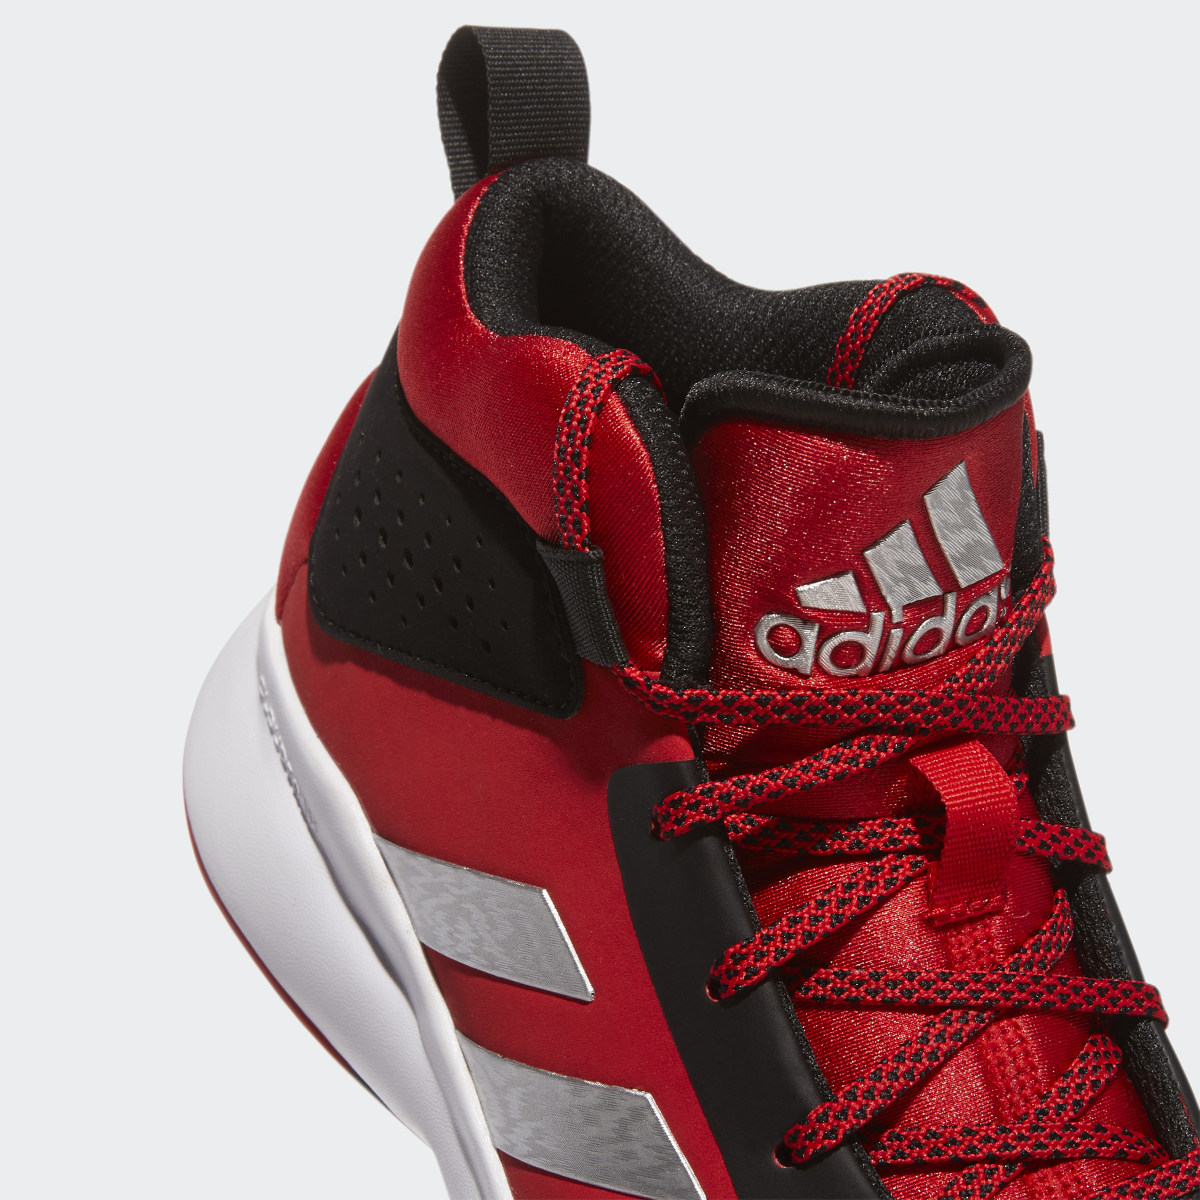 Adidas Cross Em Up 5 Wide Basketball Shoes. 9